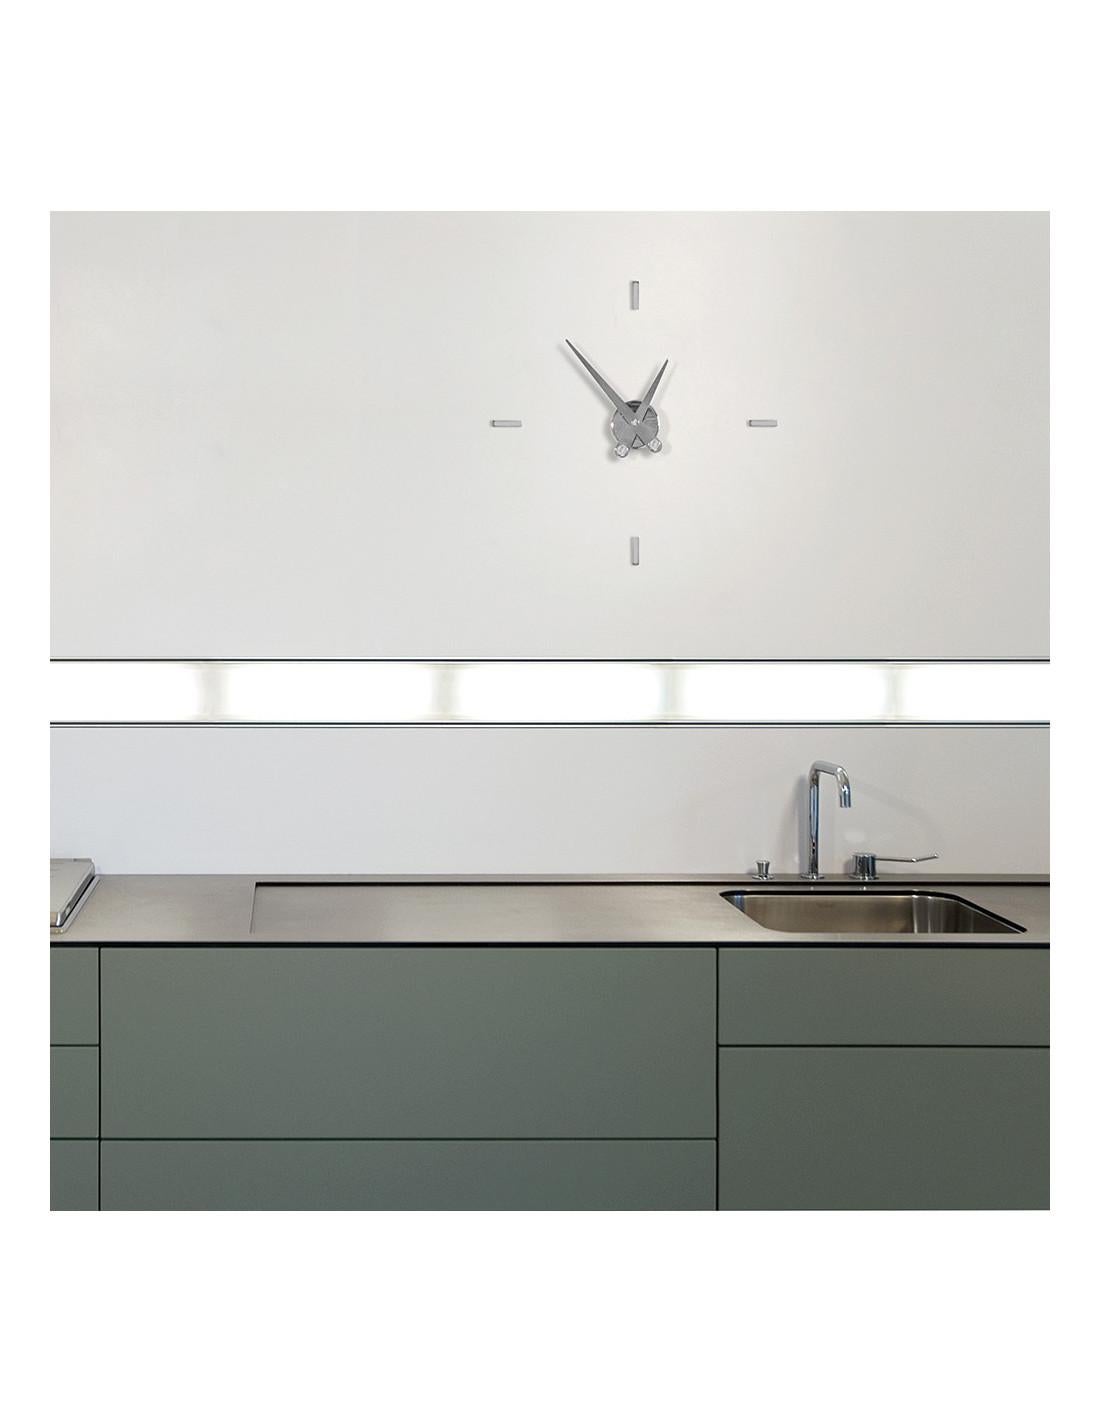 Contemporary Puntos Suspensivos 4 i Wall Clock For Sale